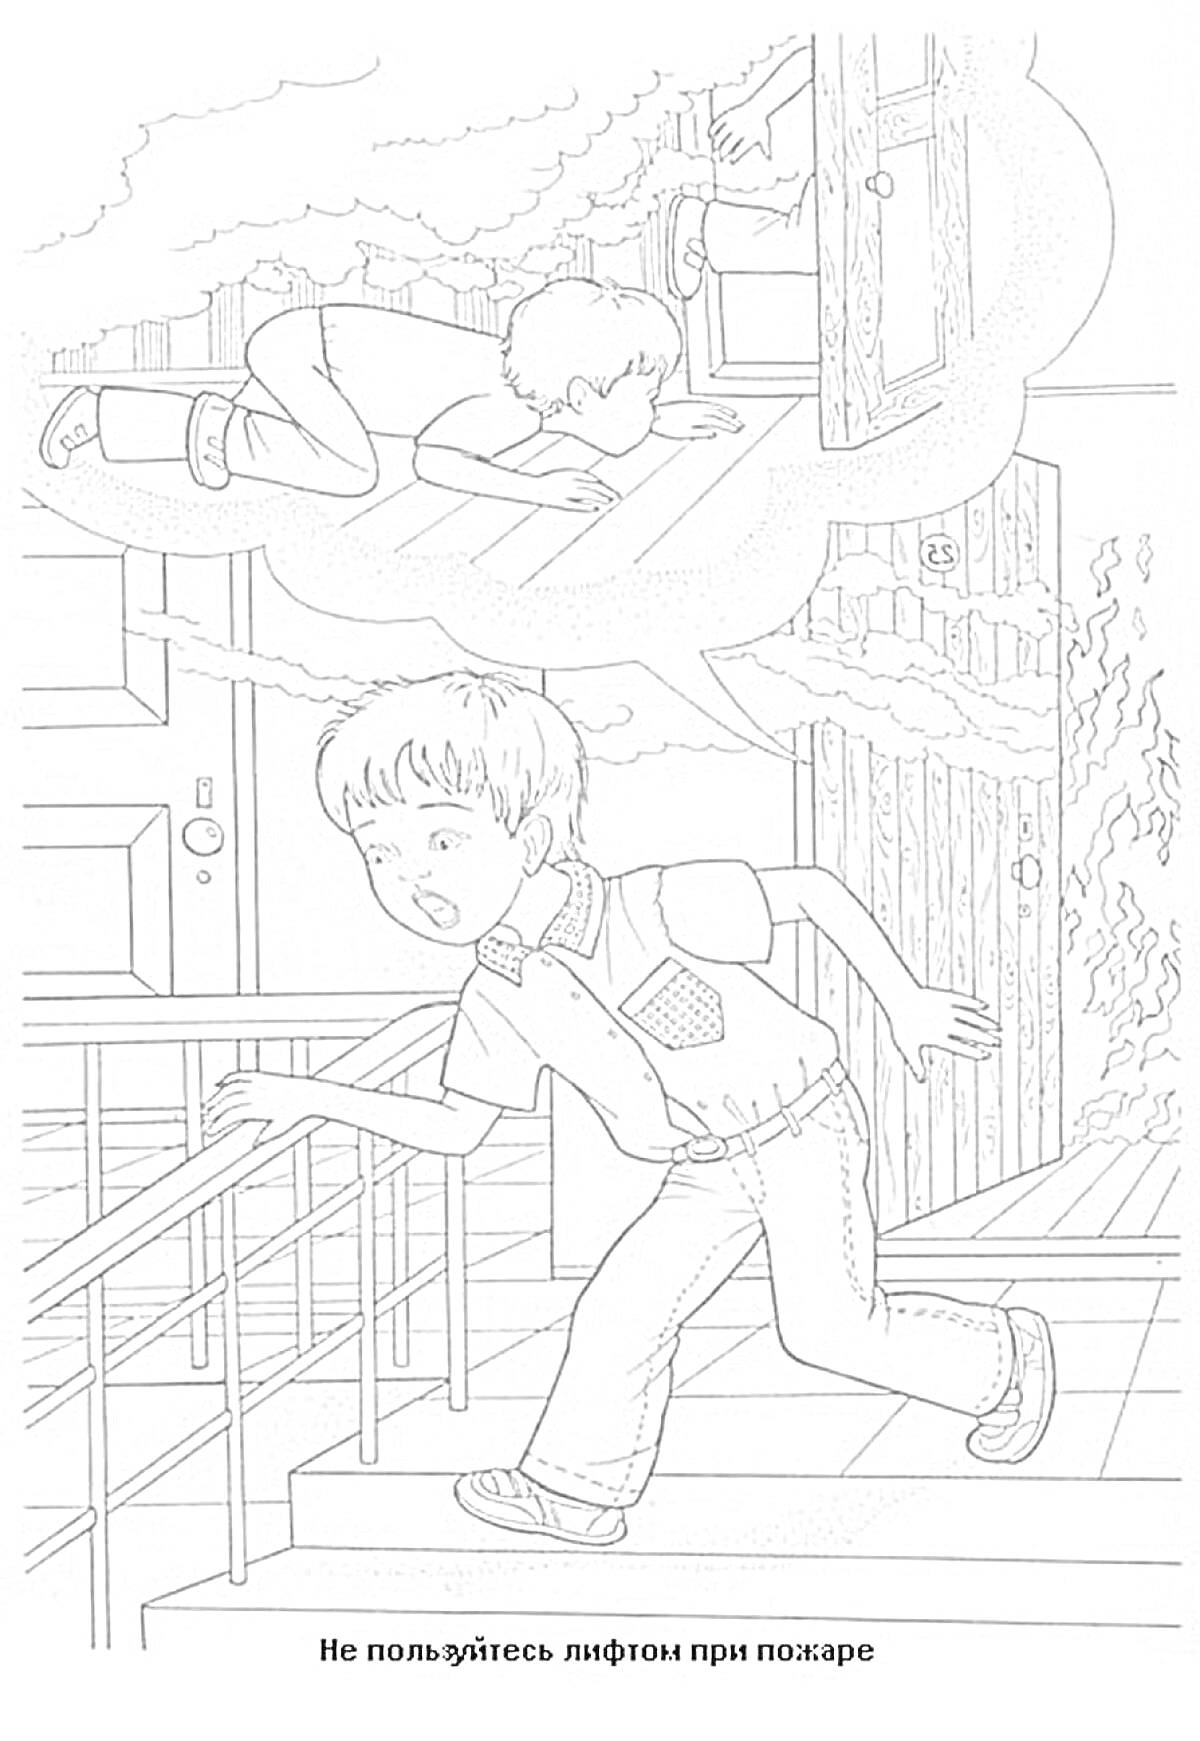 Раскраска Мальчик сбегает вниз по лестнице во время пожара, мысли о правильном поведении лежа на полу и закрывая лицо